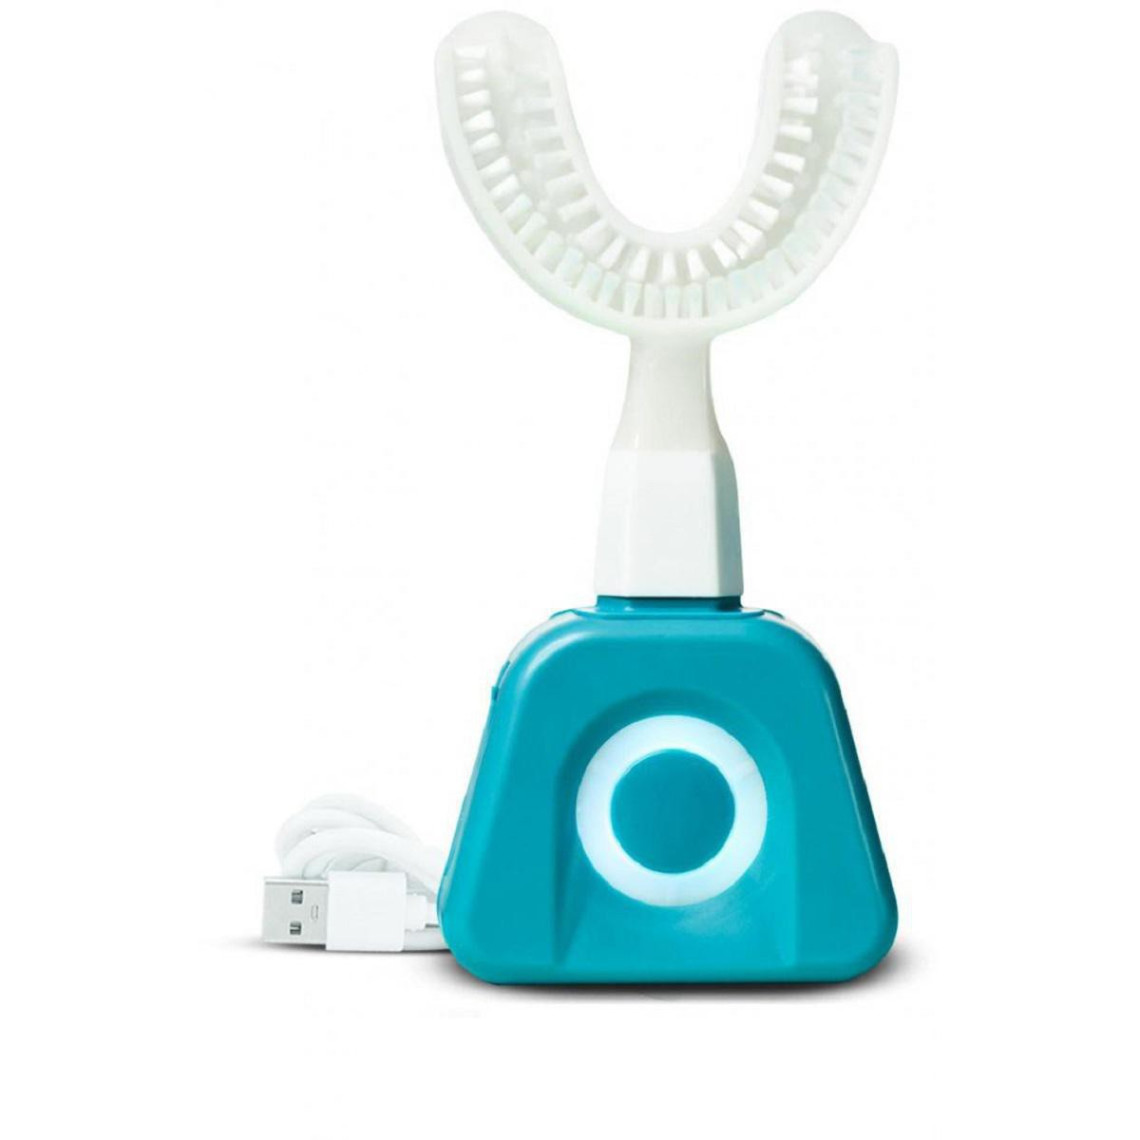 Y-Brush Pack Start Adulte - Brosse à dents taille M (+12 ans) Brossage de dents en 10 secondes - Développé avec des dentistes - Fabriqué en France - Ce pack pour une personne comprend : 1 Manche, 1 Brosse, 1 câble USB , 1 Applicateur de dentifrice et un accès au programme d'accompagnement